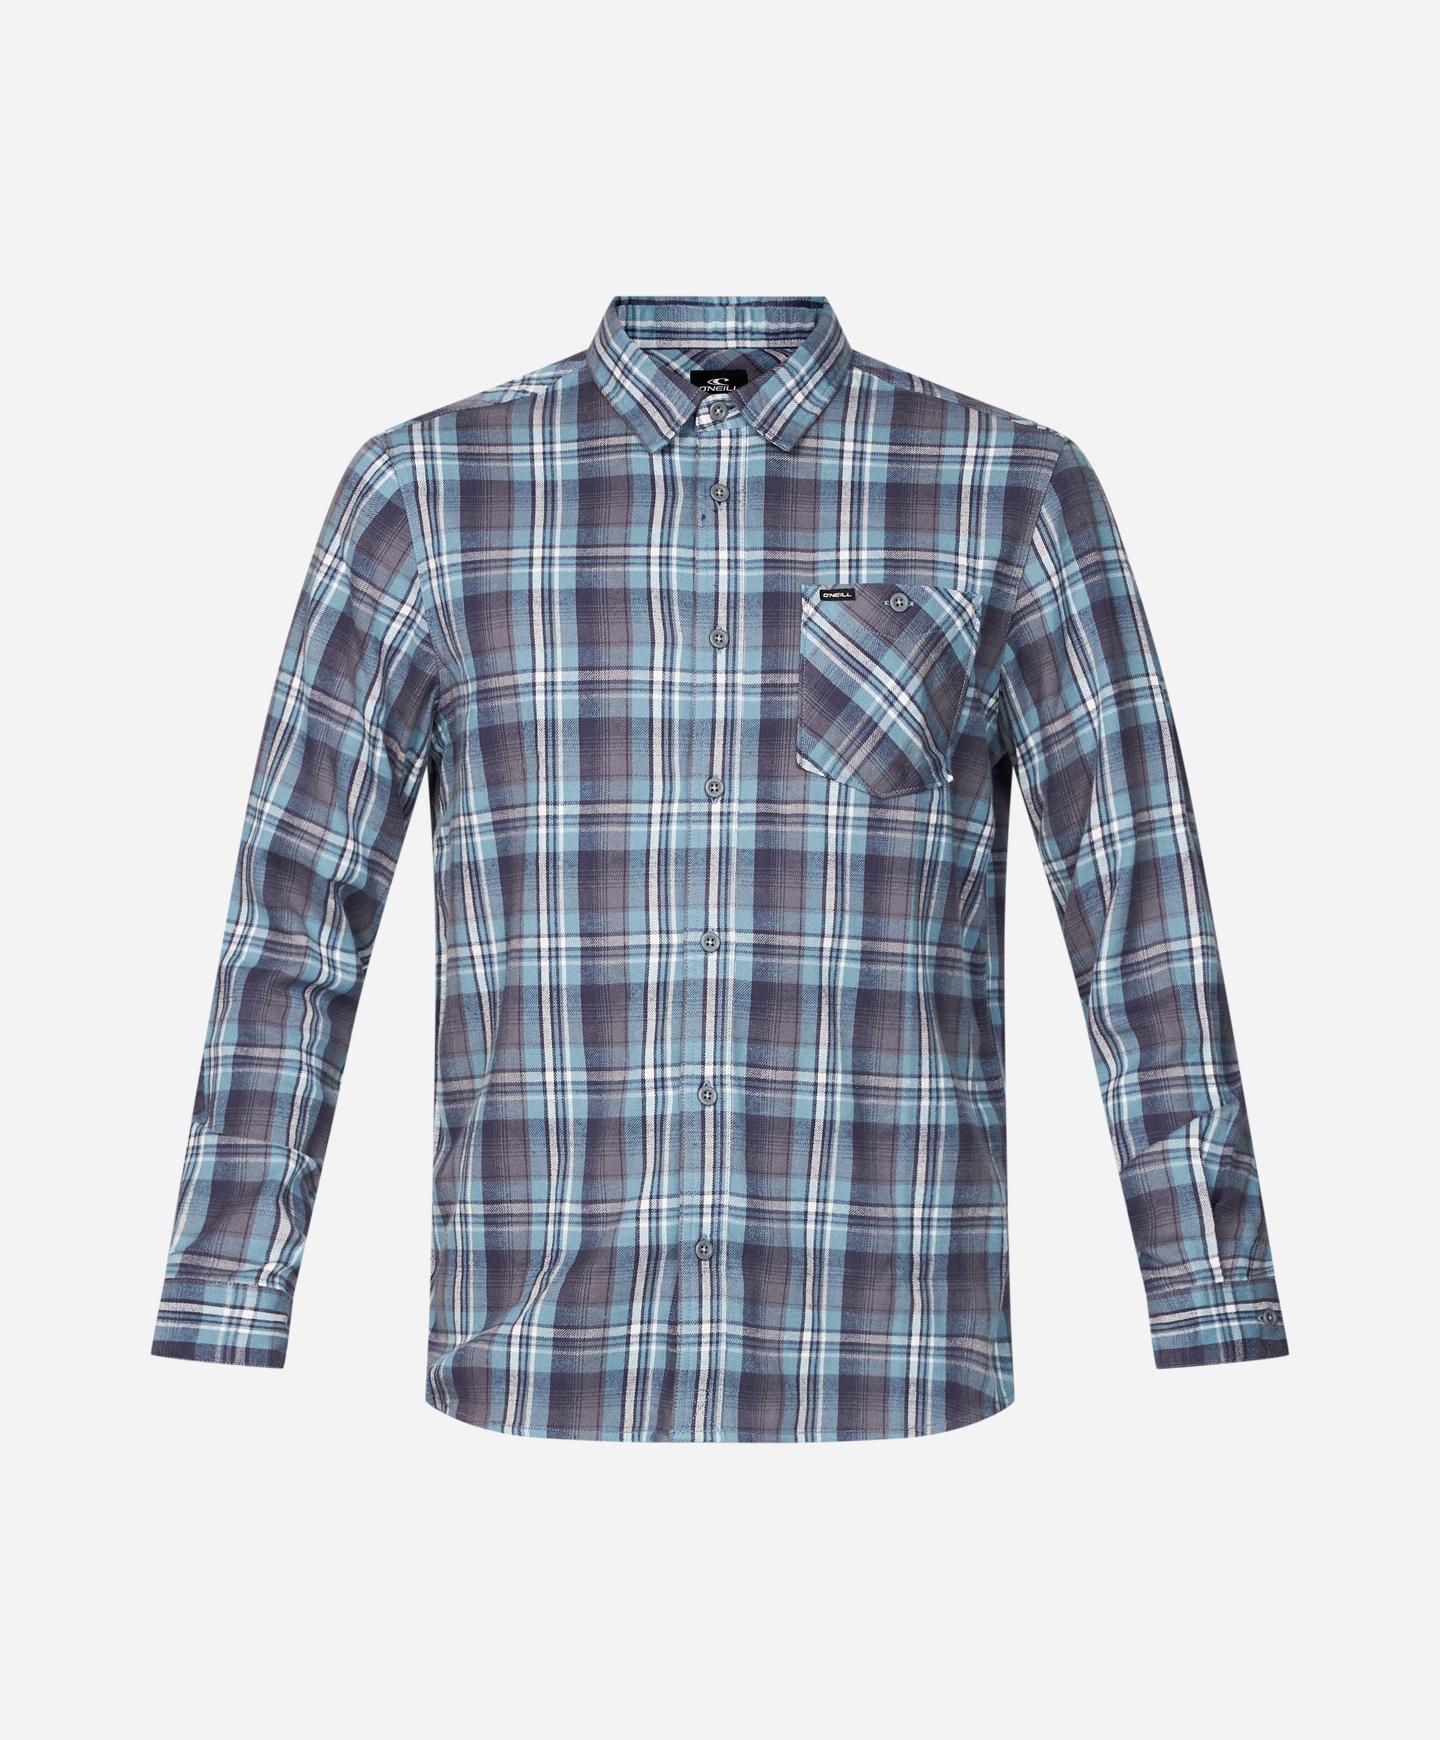 Redmond Plaid Stretch Flannel Shirt - Scrub Blue